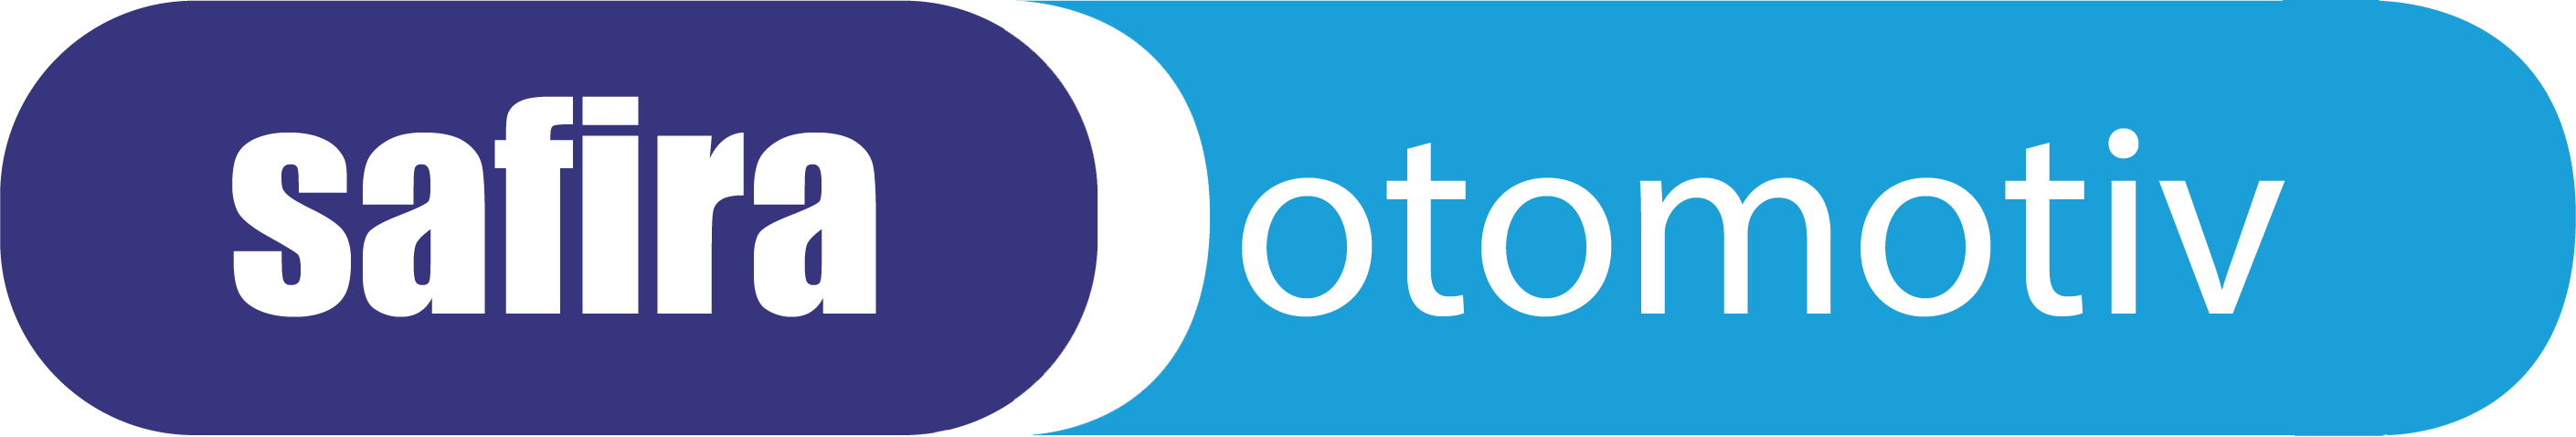 Safira Otomotiv Logo